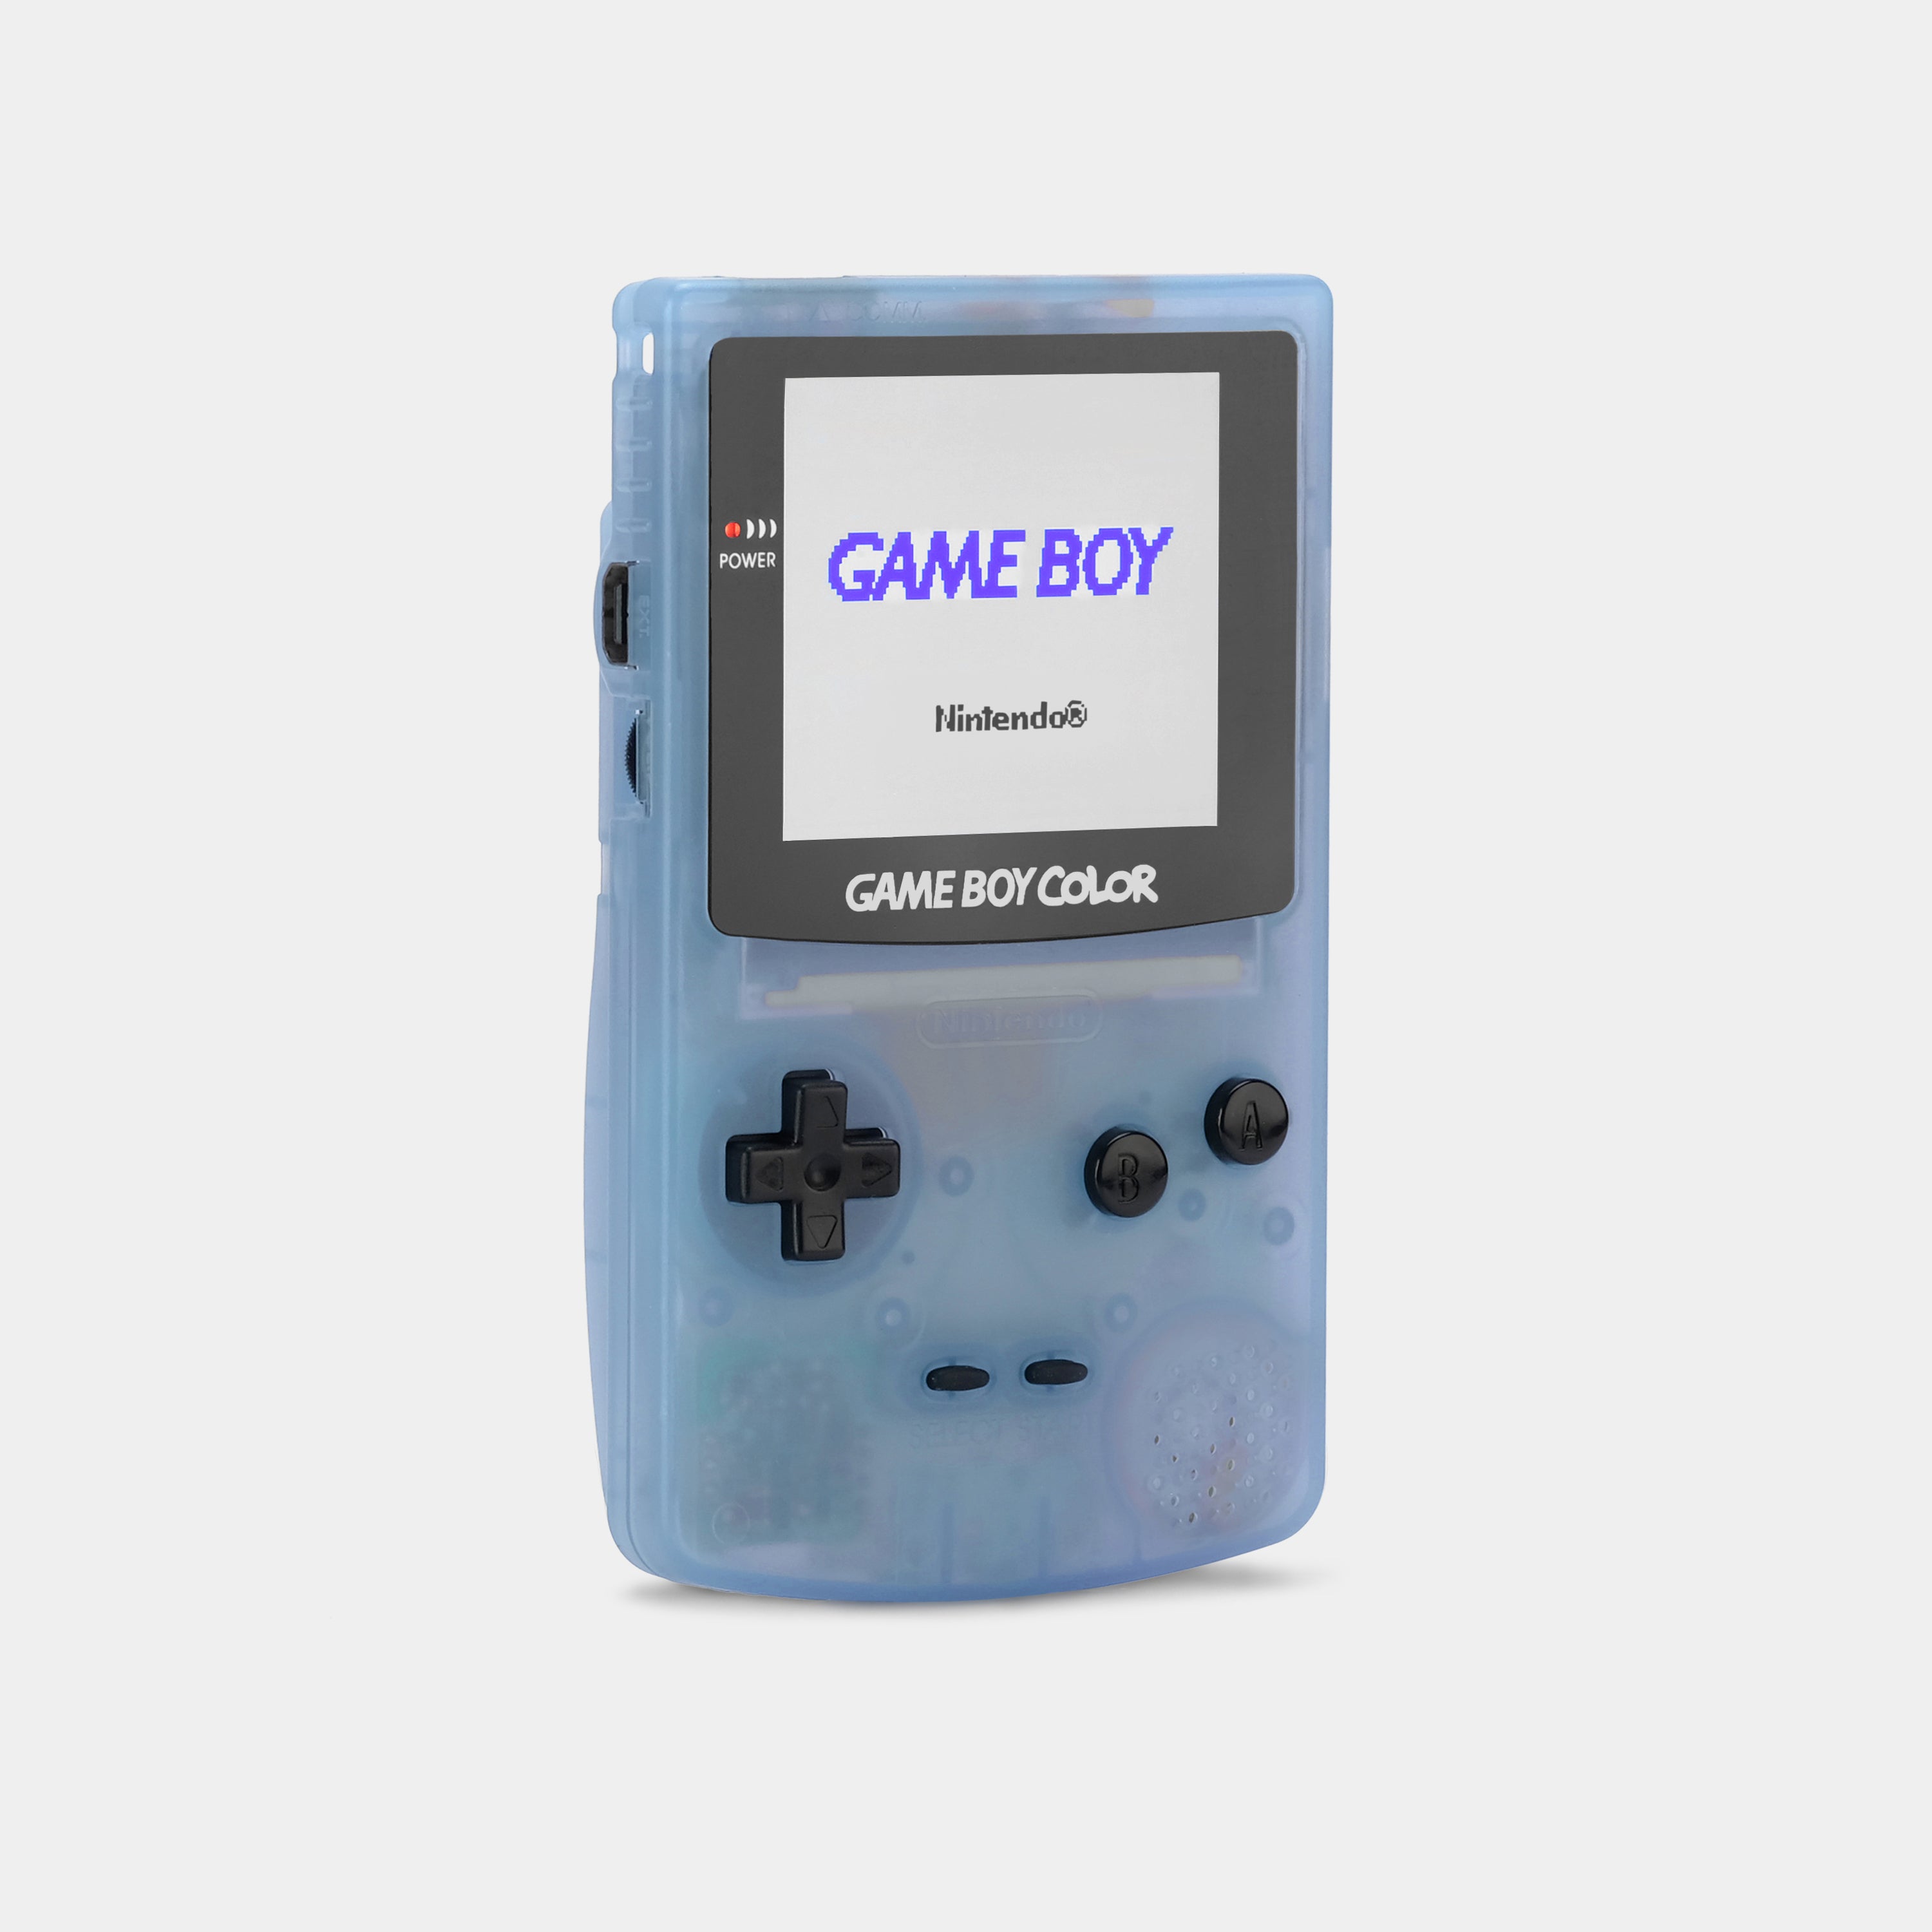 GameBoy Color - Nintendo